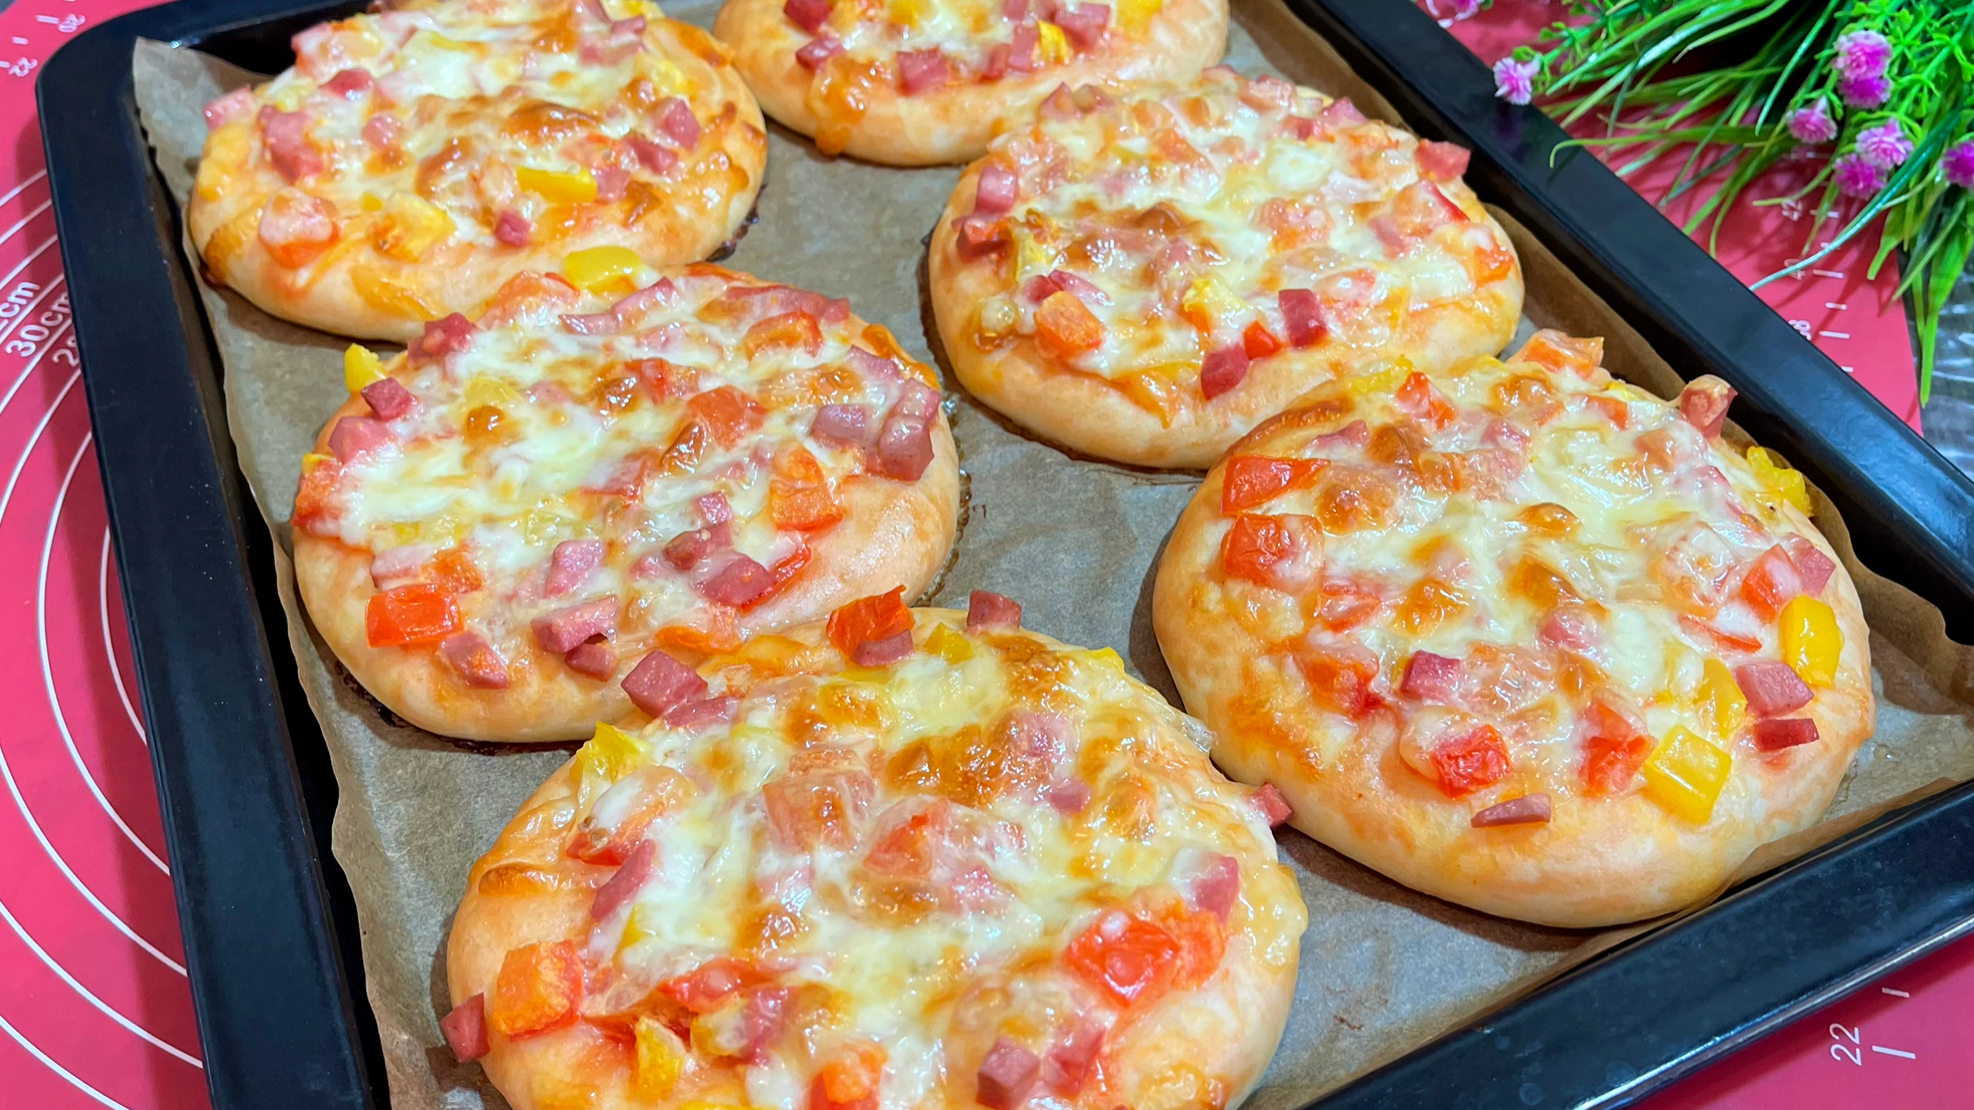 школьная пицца рецепт в домашних условиях с фото пошагово фото 31